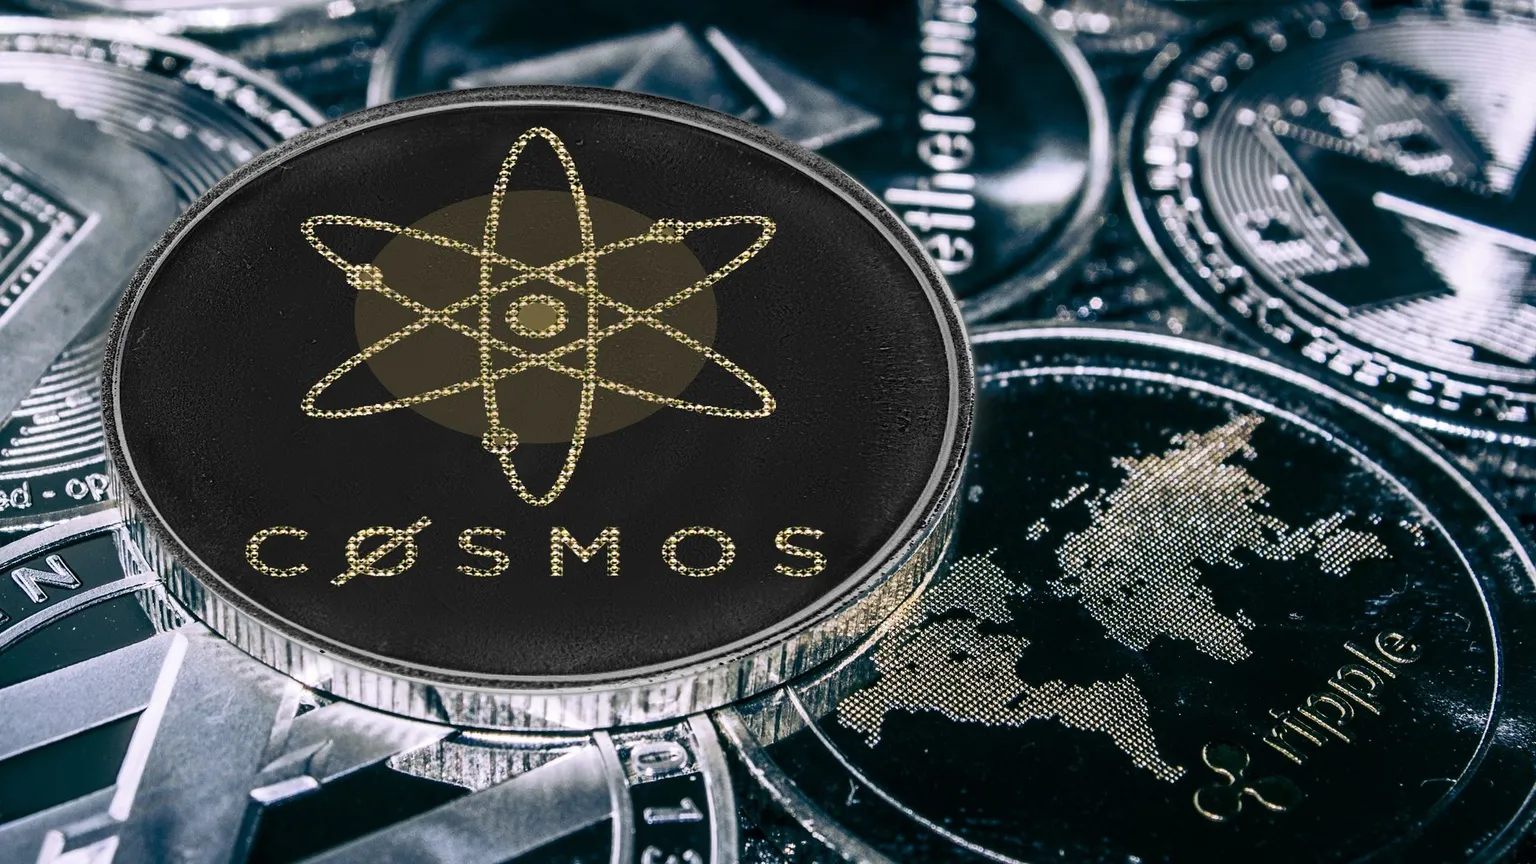 cosmos (ATOM) coin among other crypto coins